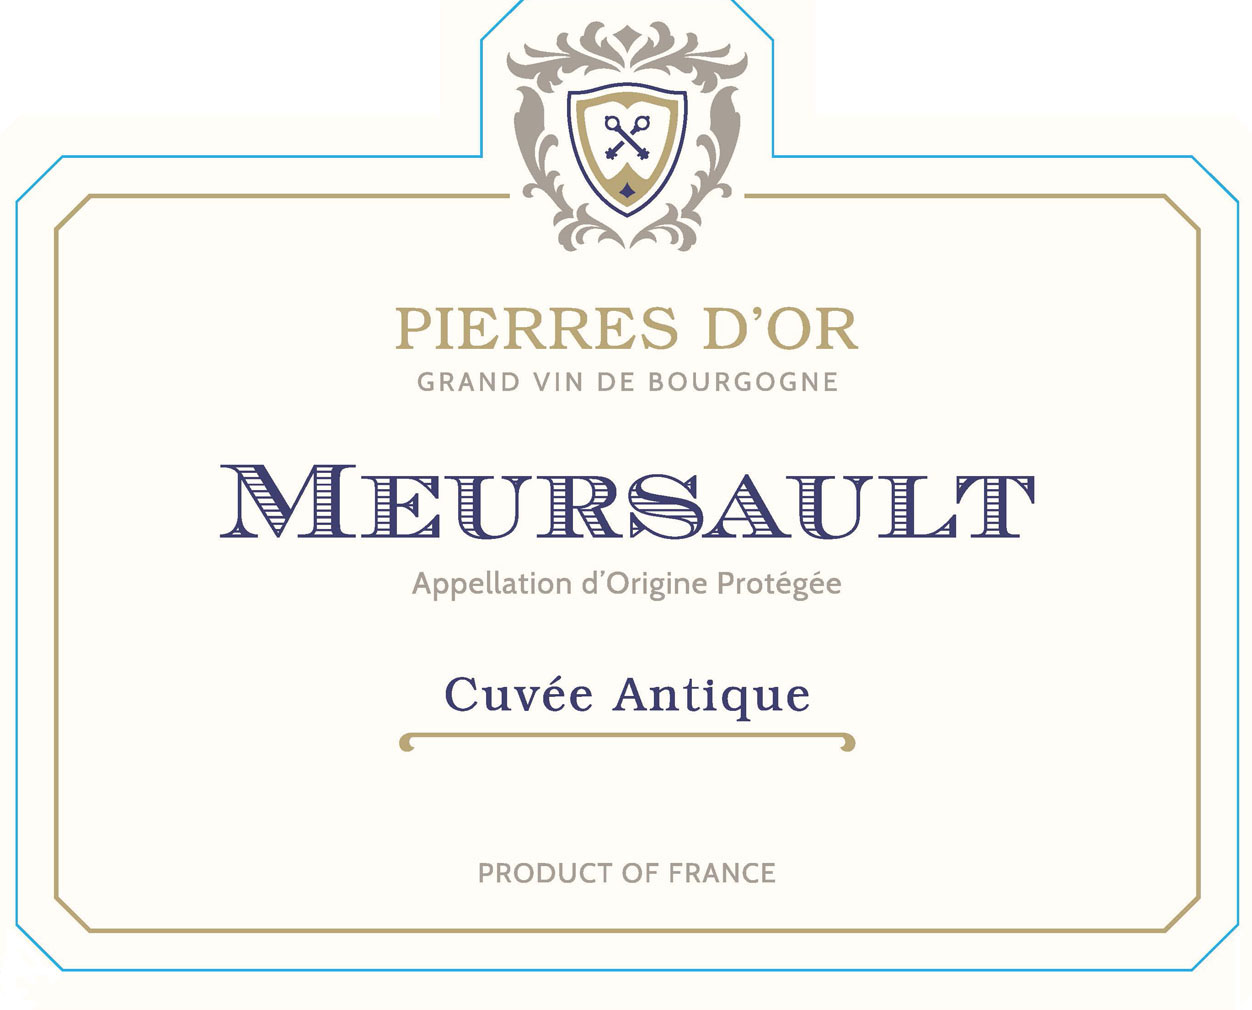 Pierres D'or - Meursault label